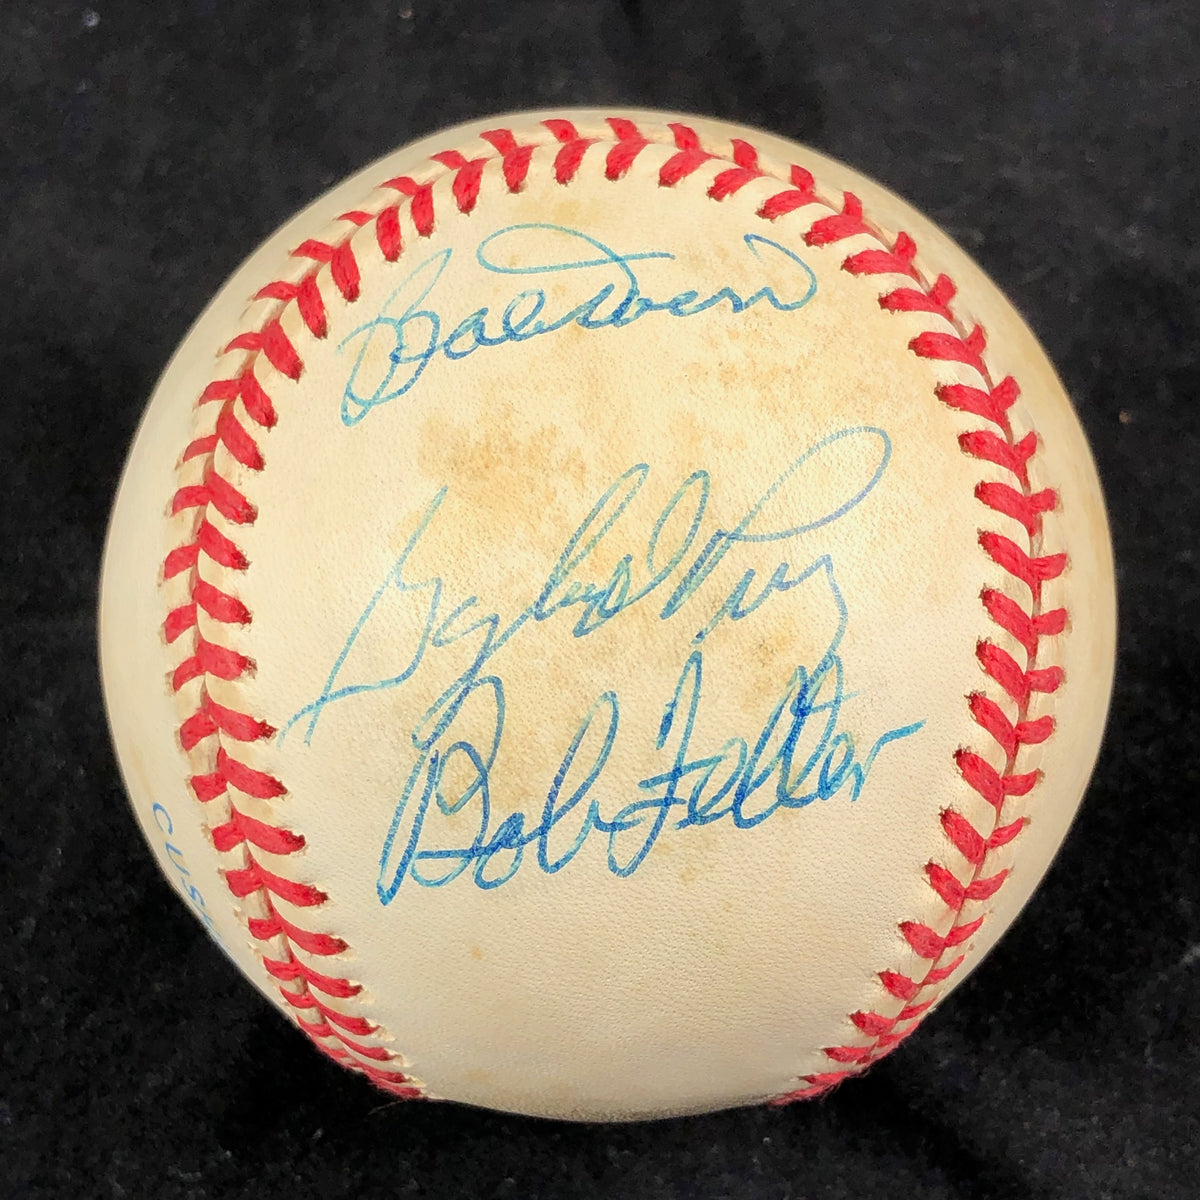 BOBBY DOERR BOB FELLER GAYLORD PERRY Signed Baseball PSA/DNA